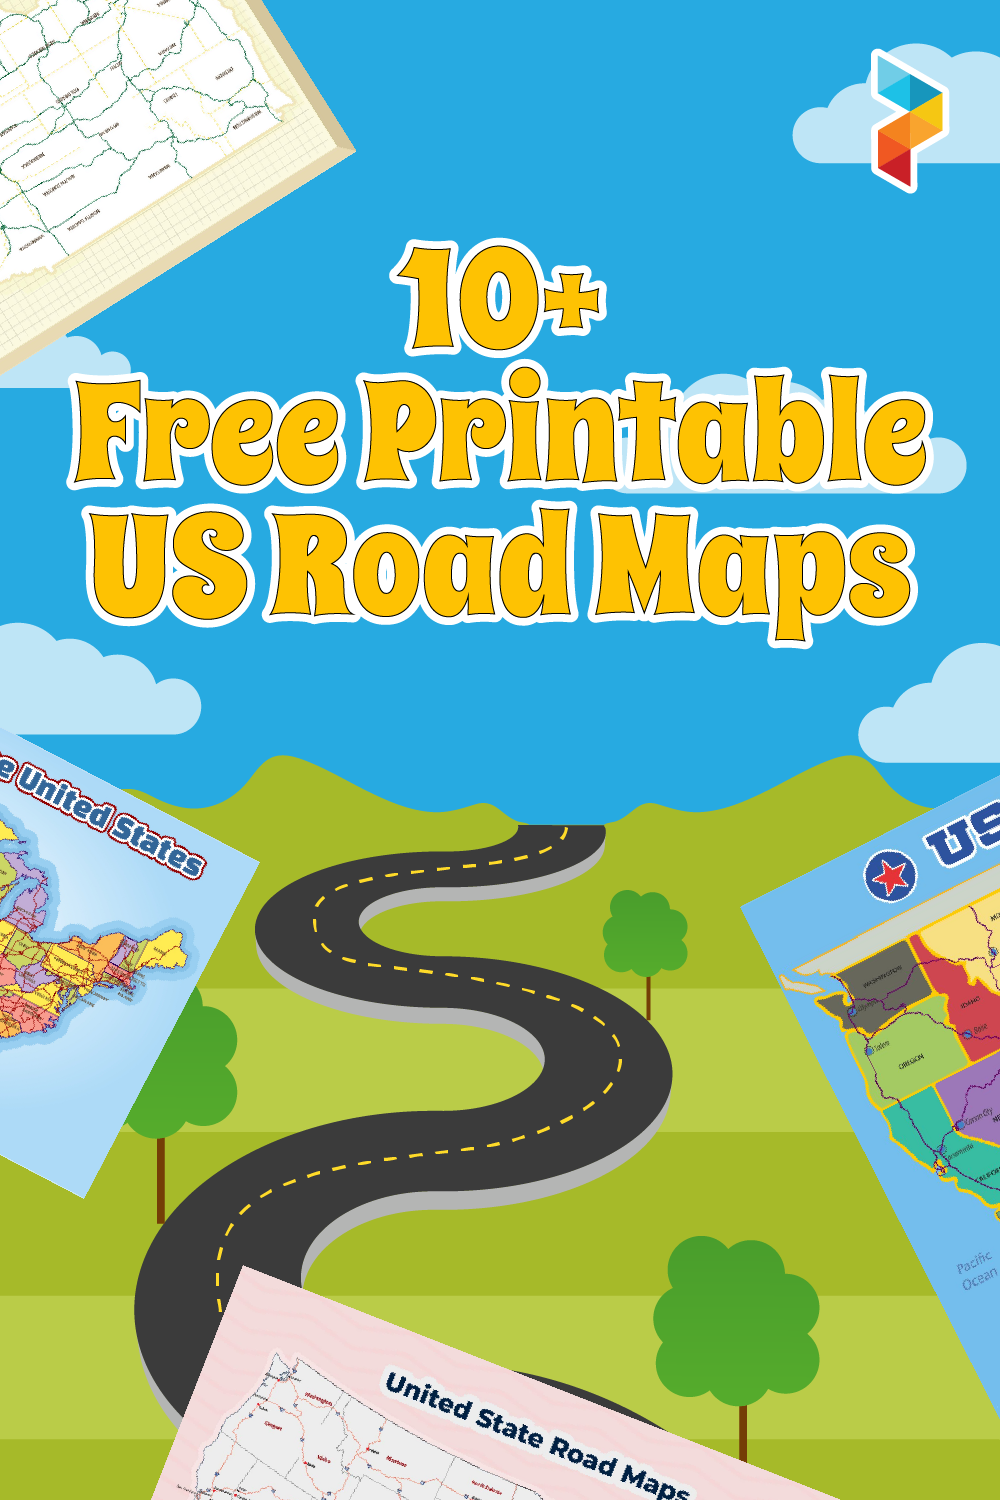 US Road Maps